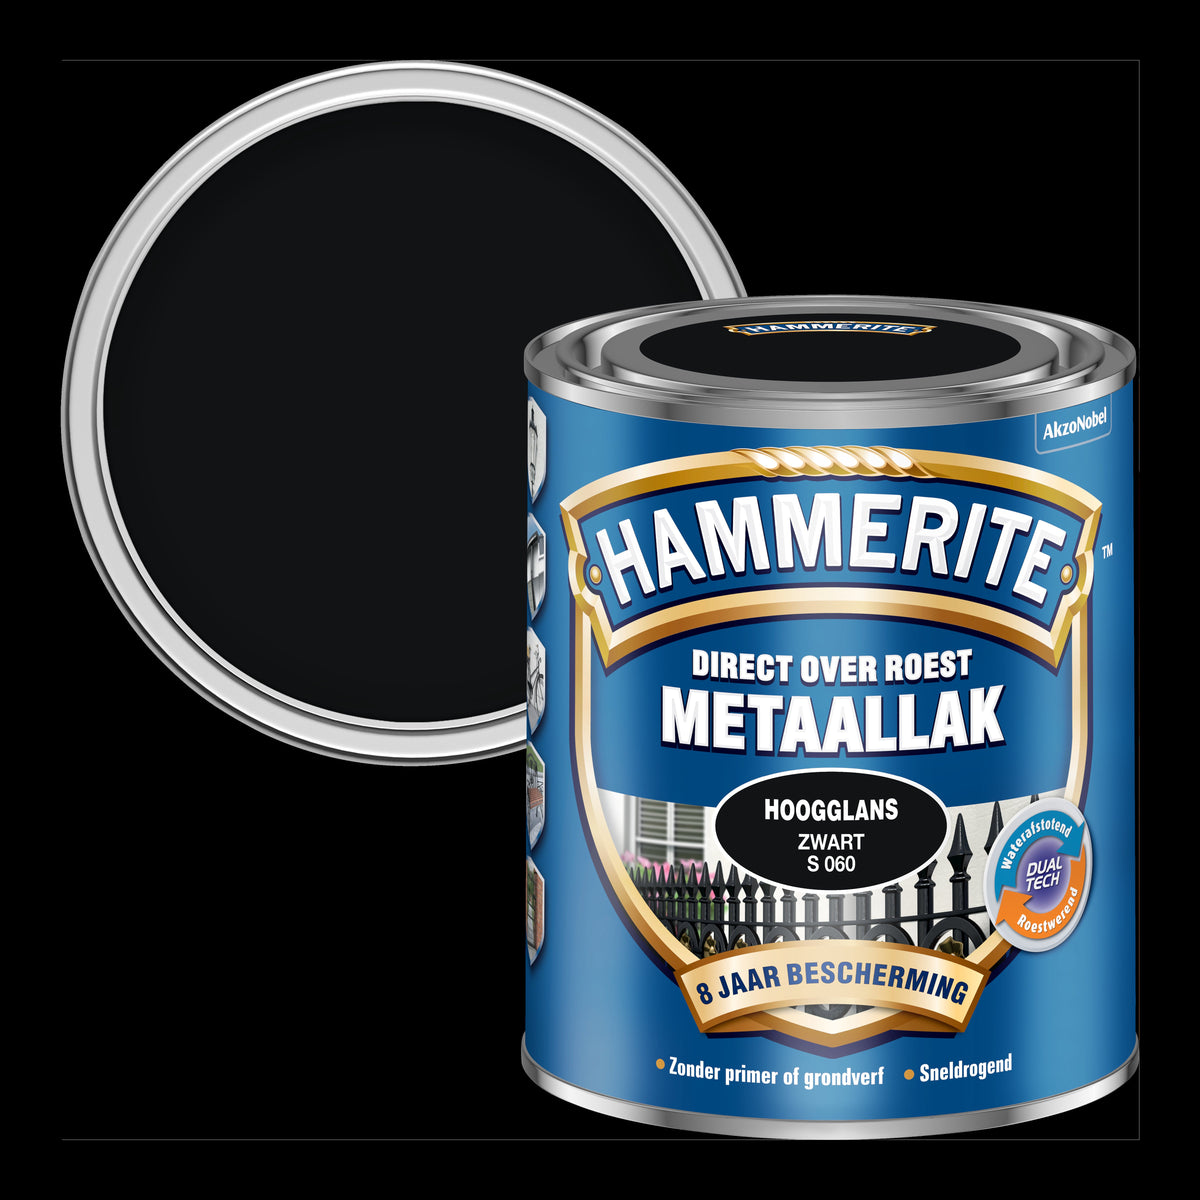 Hammerite metaallak zwart S060 hoogglans 750ml